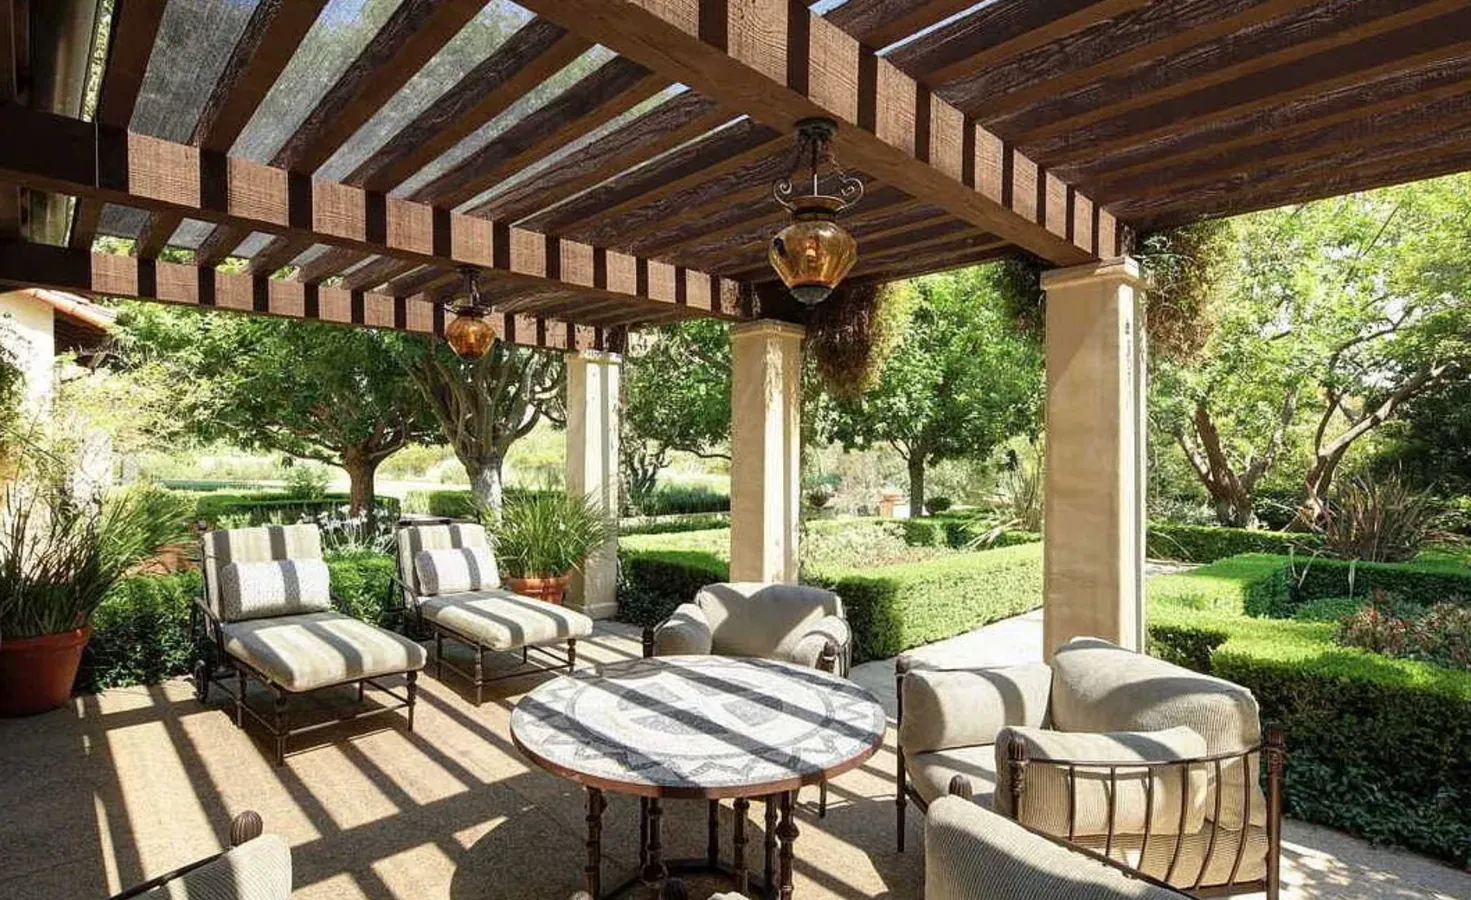 Así es la nueva mansión de Dwayne Johnson. Esta área también incluye diferentes espacios en los que relajarse, como diferentes terrazas, jardines y solárium junto a la piscina en los que la familia podrá disfrutar de los calurosos veranos.